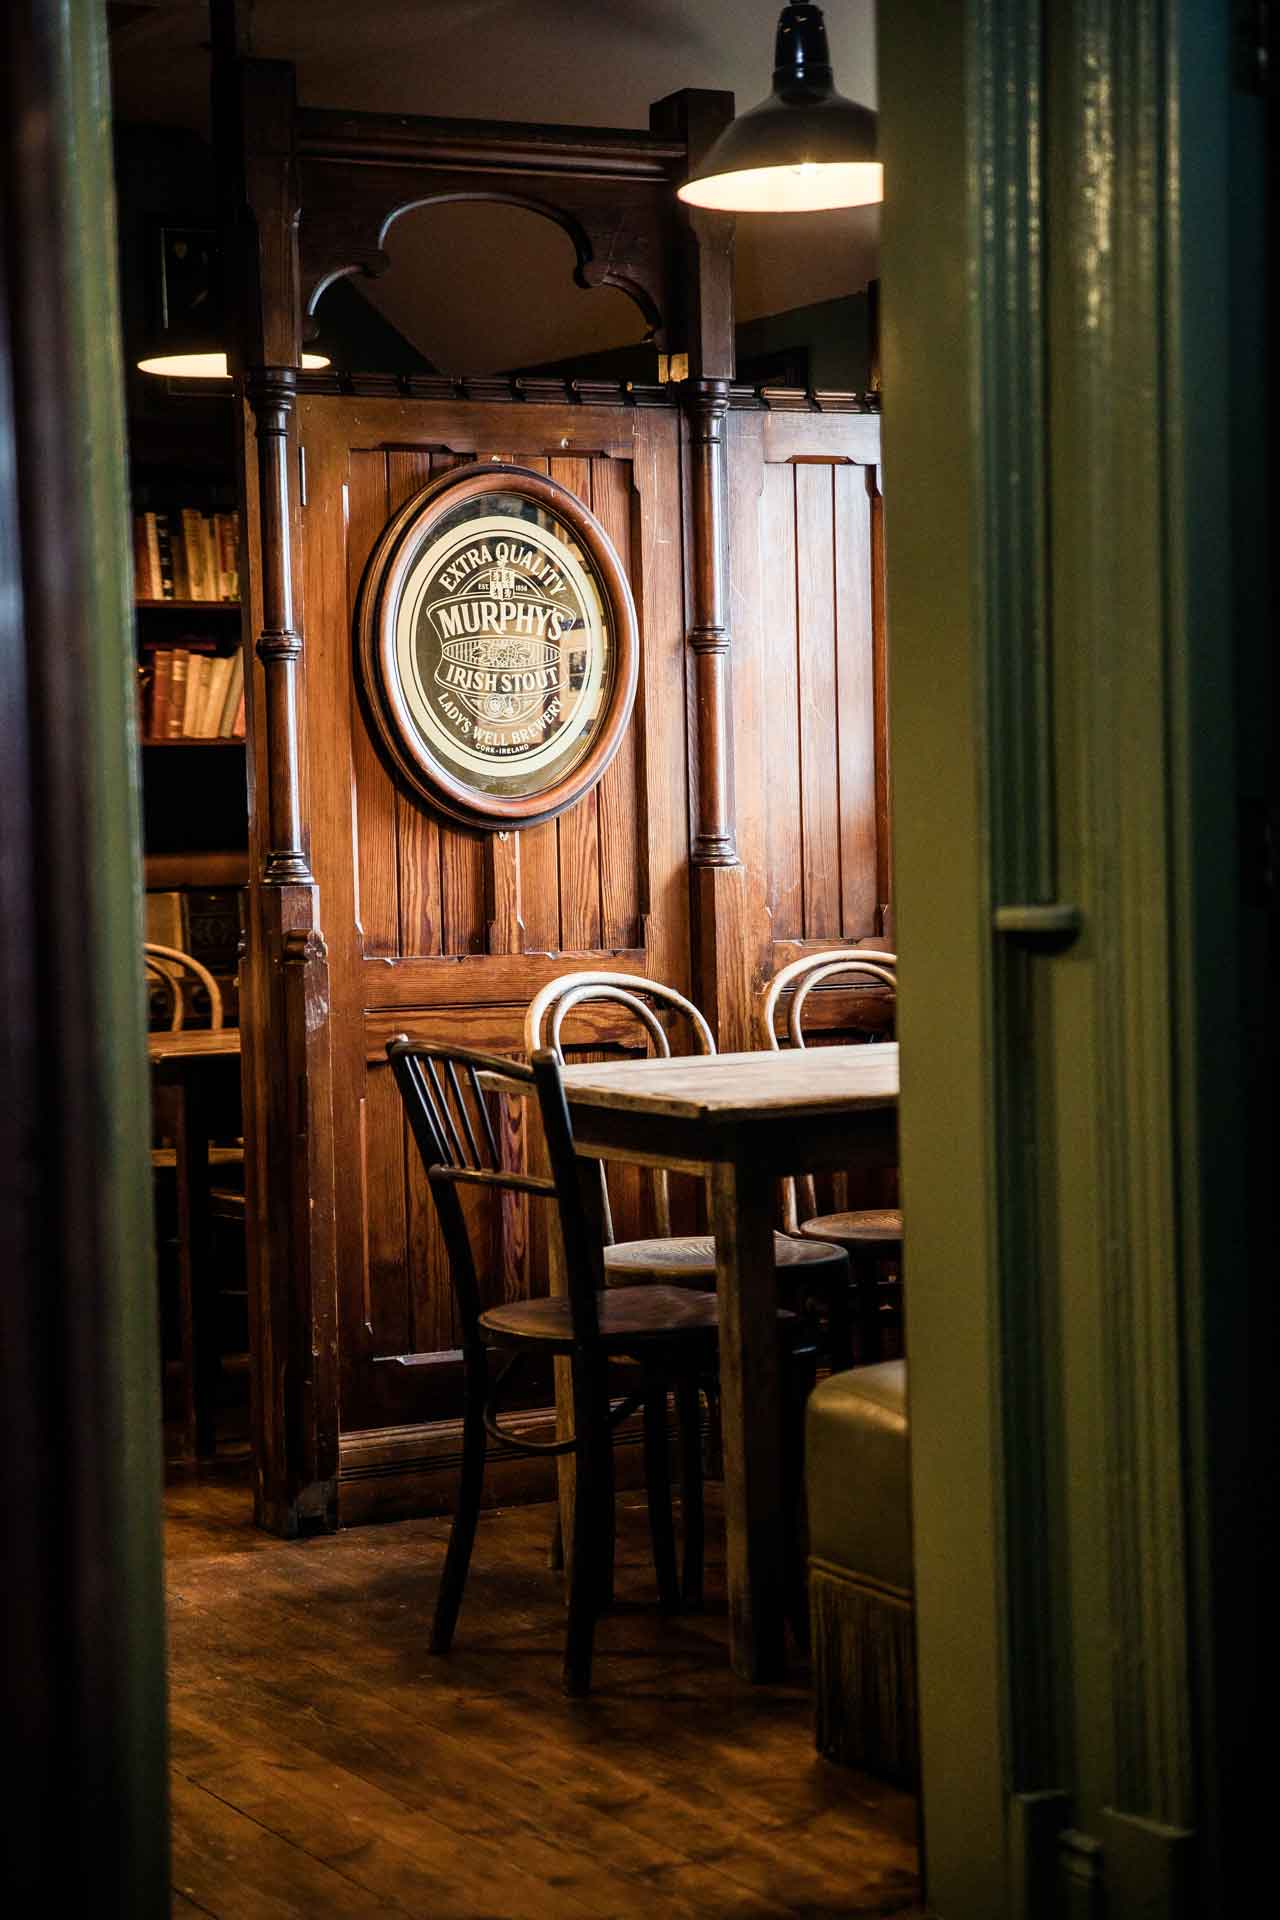 Treacy’s Bar & Restaurant, The Heath, Portlaoise, Co Laois